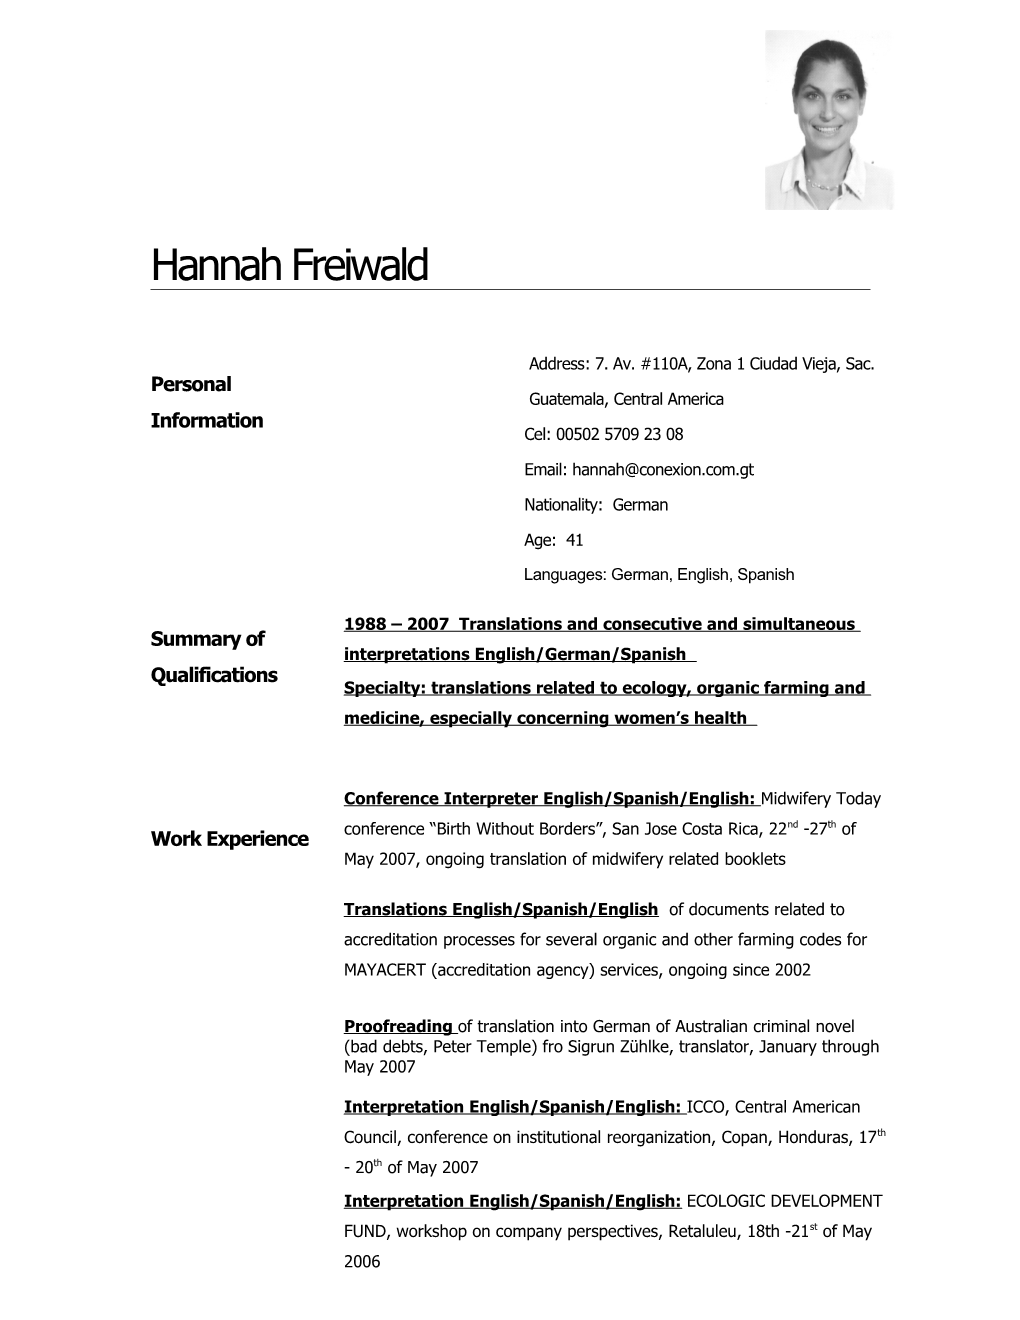 Hannah Freiwald